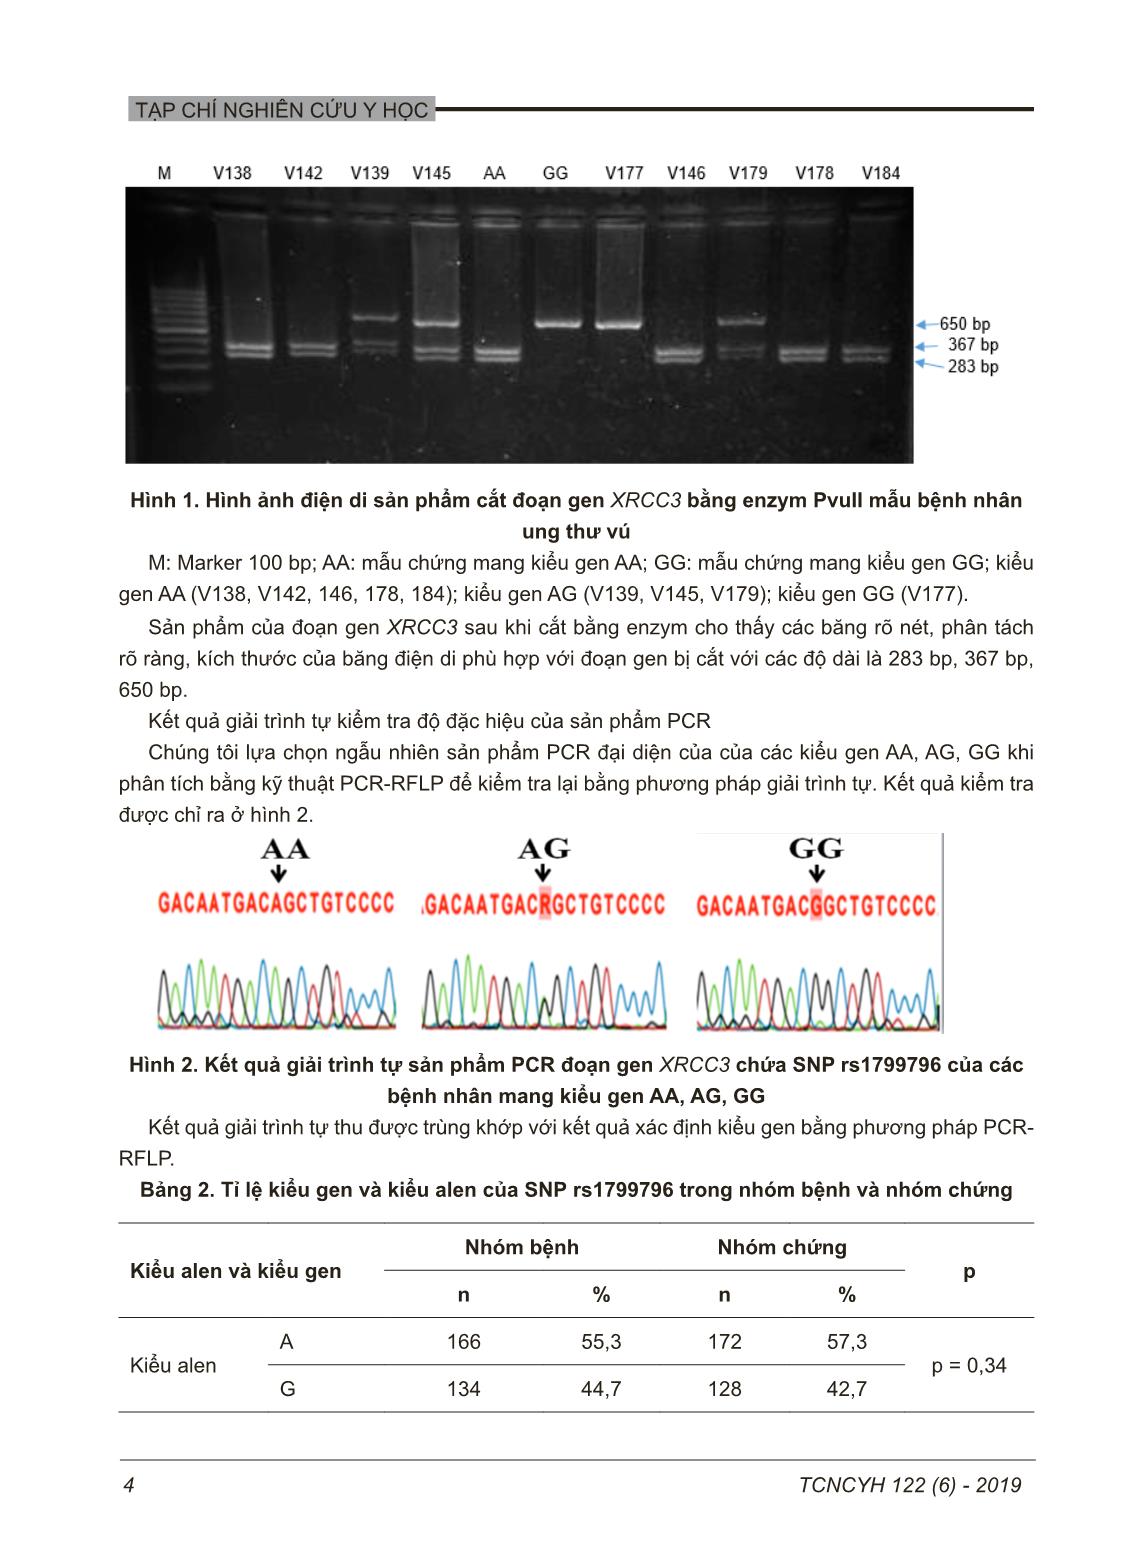 Đa hình đơn nucleotide RS1799796 của gen XRCC3 trong ung thư vú trang 4